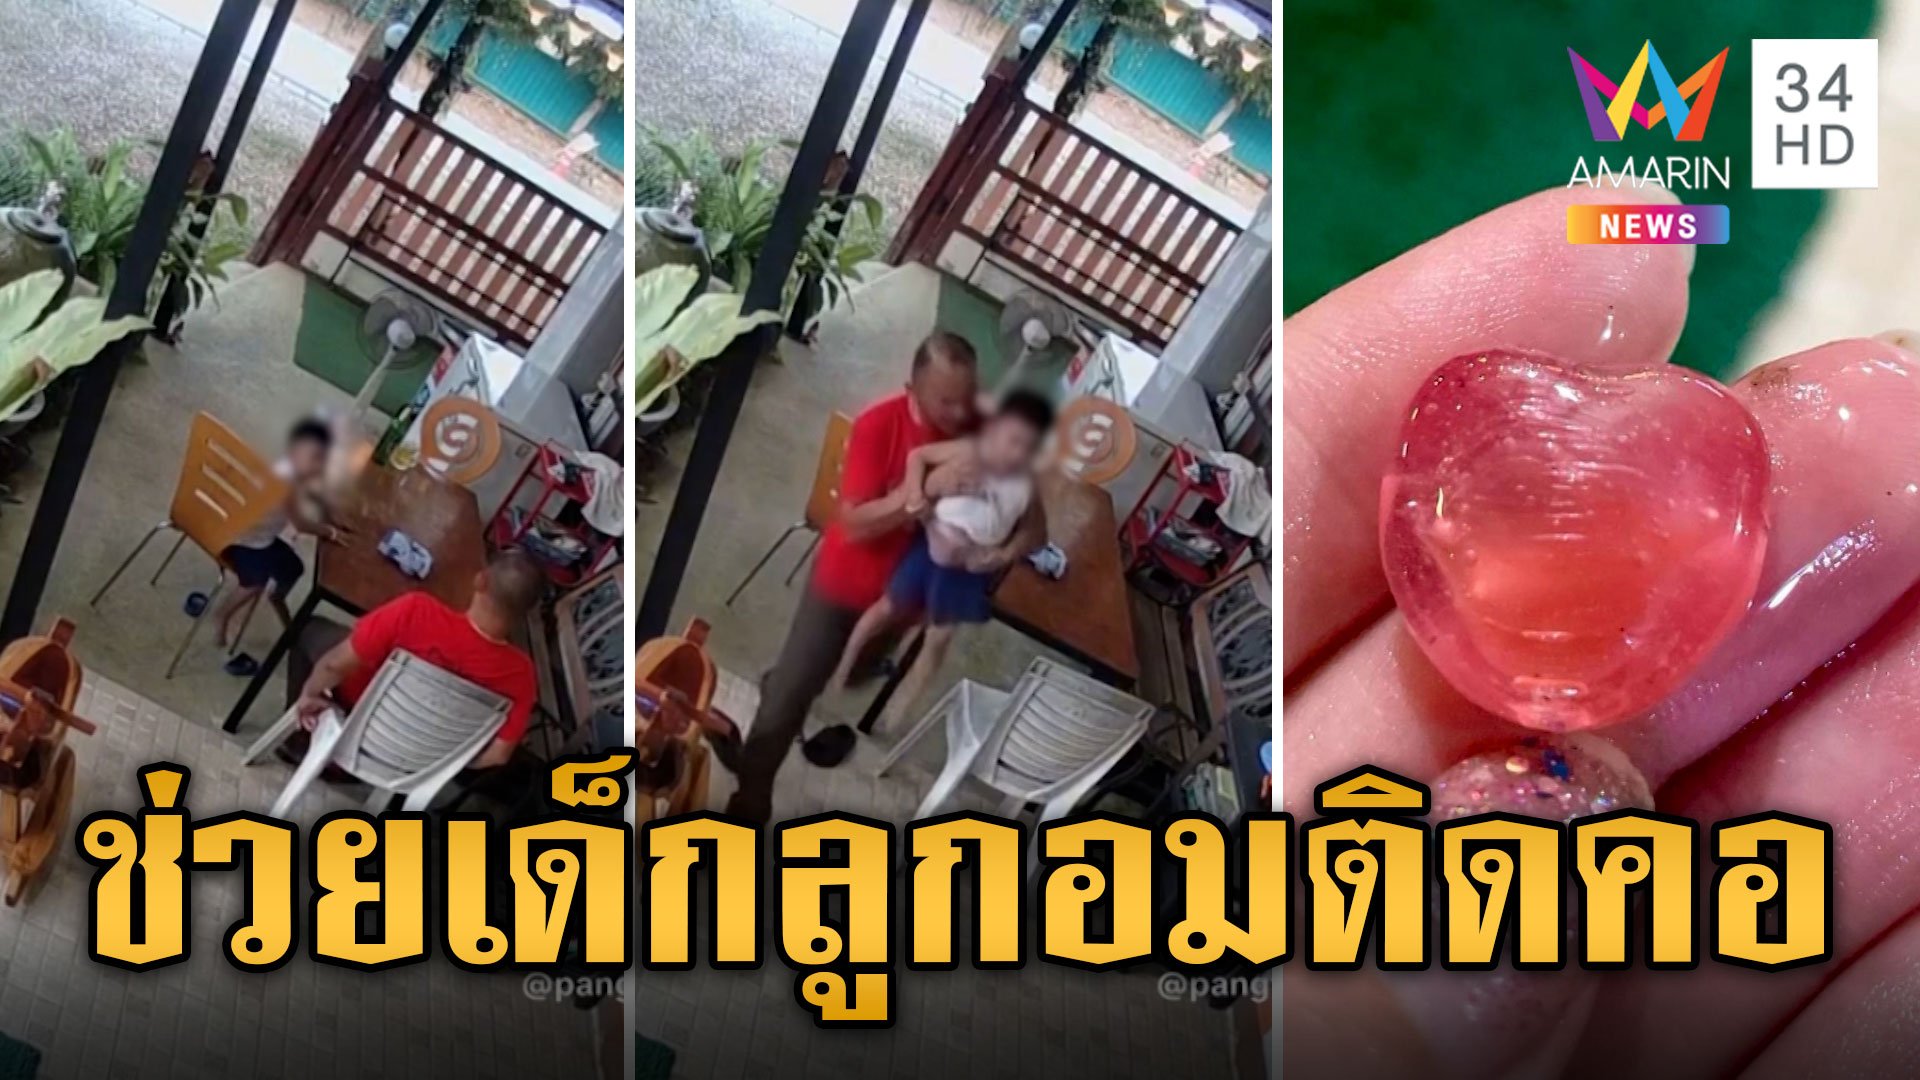 อุทาหรณ์ เด็กกินลูกอมติดคอโชคดีช่วยทัน หวิดกลายเป็นเรื่องร้าย | ข่าวเที่ยงอมรินทร์ | 4 มี.ค. 67 | AMARIN TVHD34